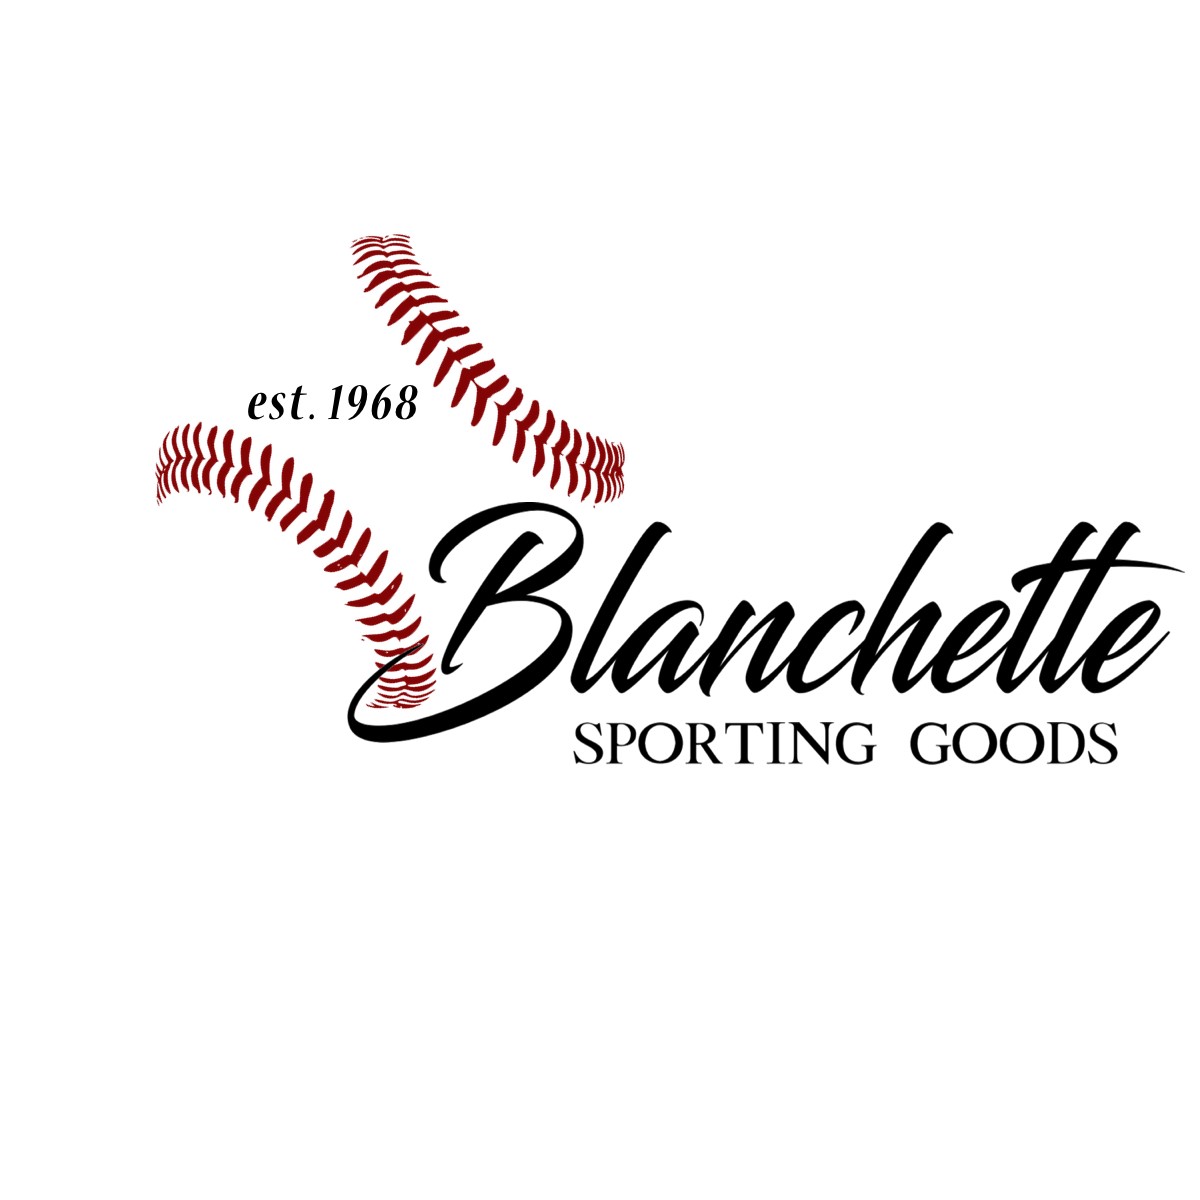 Blanchette's Sporting Goods